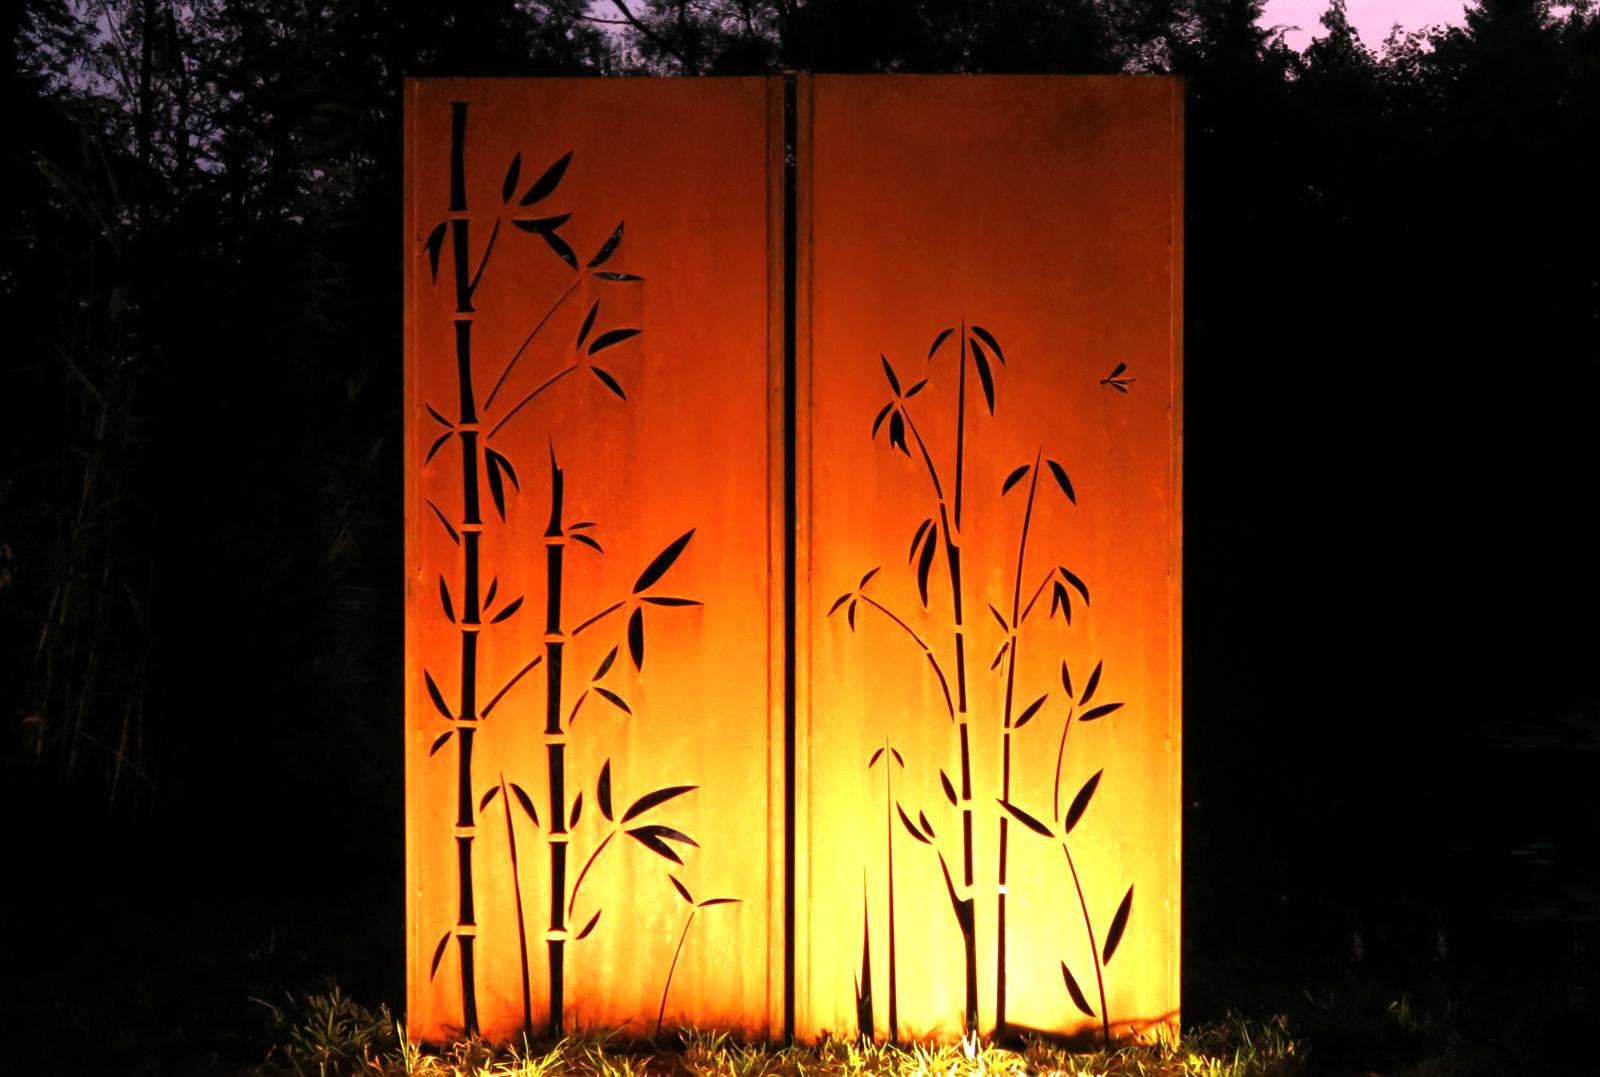 Tapis de jardin - Diptyque bambou - Acier -  Ornement d'extérieur moderne - 150 cm x 195 cm - Moderne Mixed Media Art par Stefan Traloc